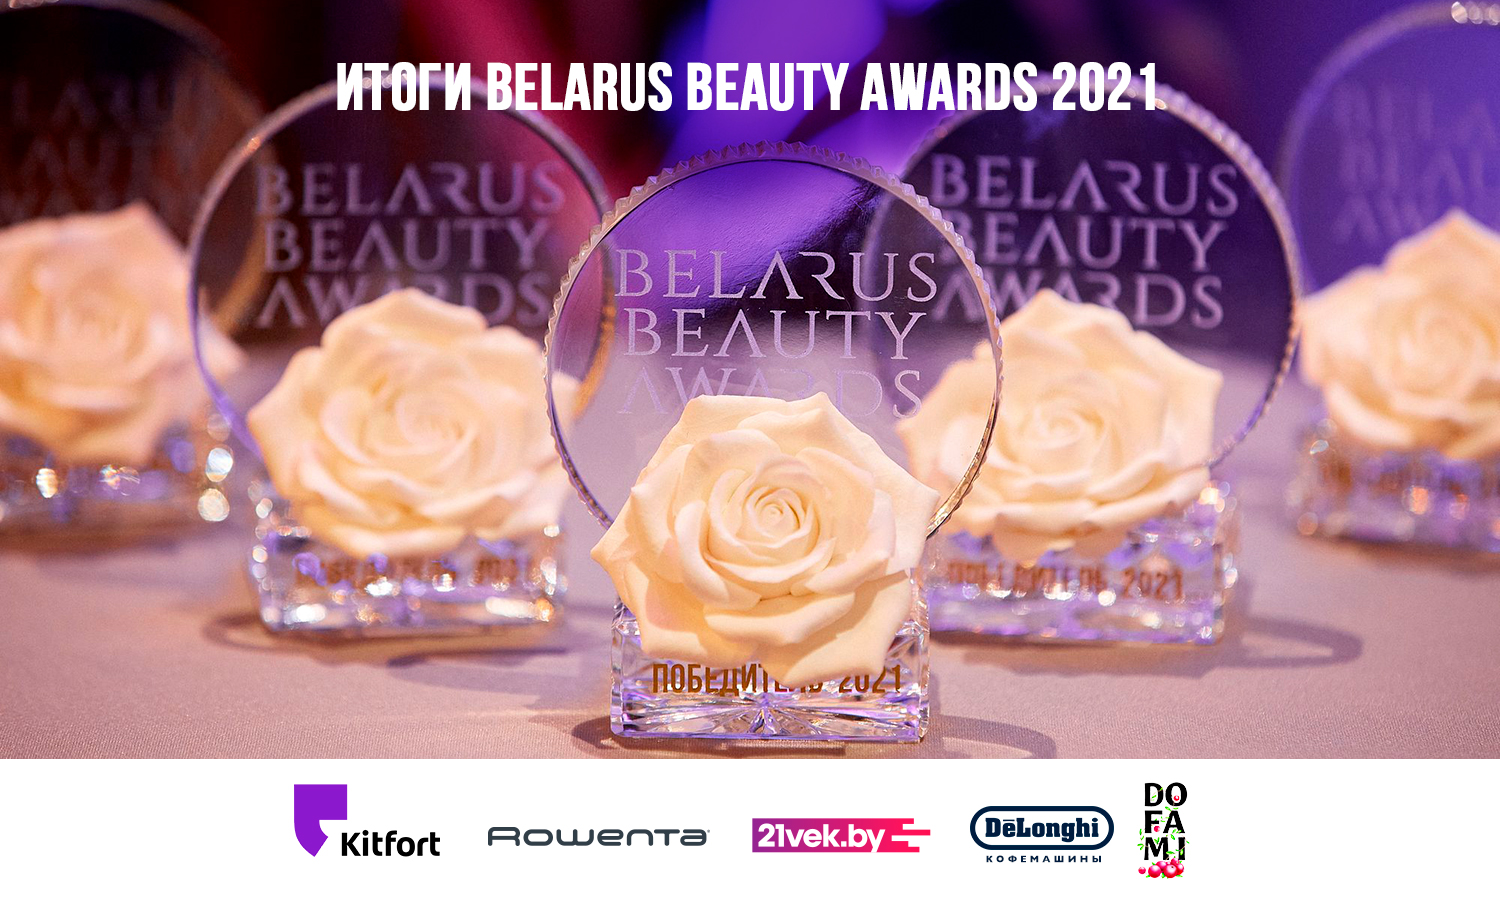 Объявлены итоги премии Belarus Beauty Awards 2021 1